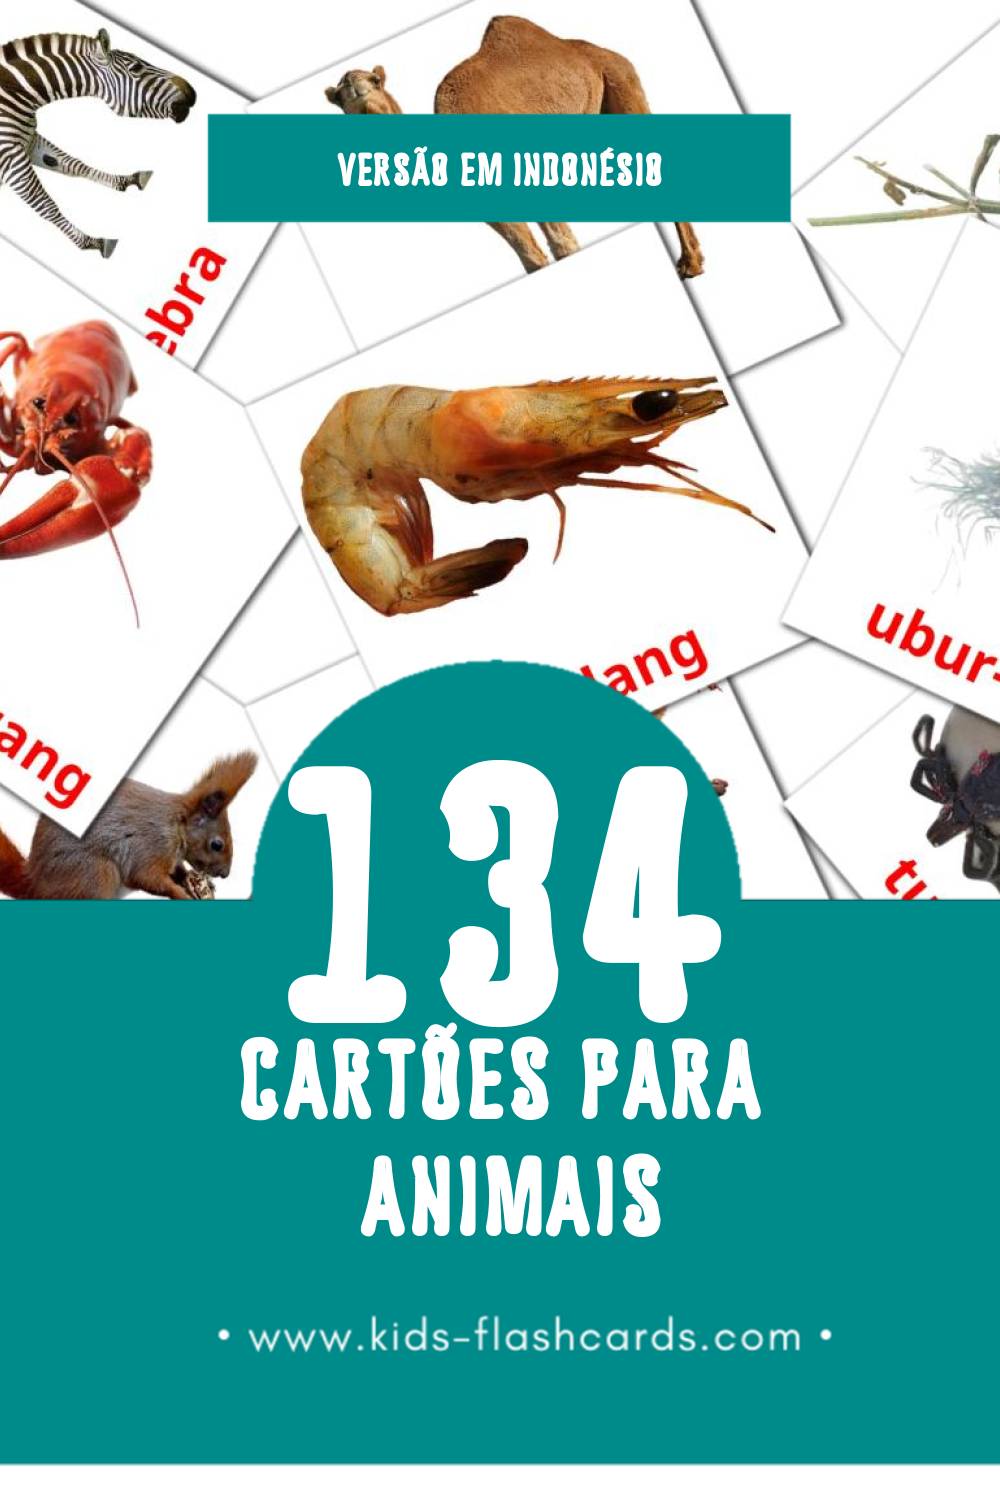 Flashcards de Binatang Visuais para Toddlers (134 cartões em Indonésio)